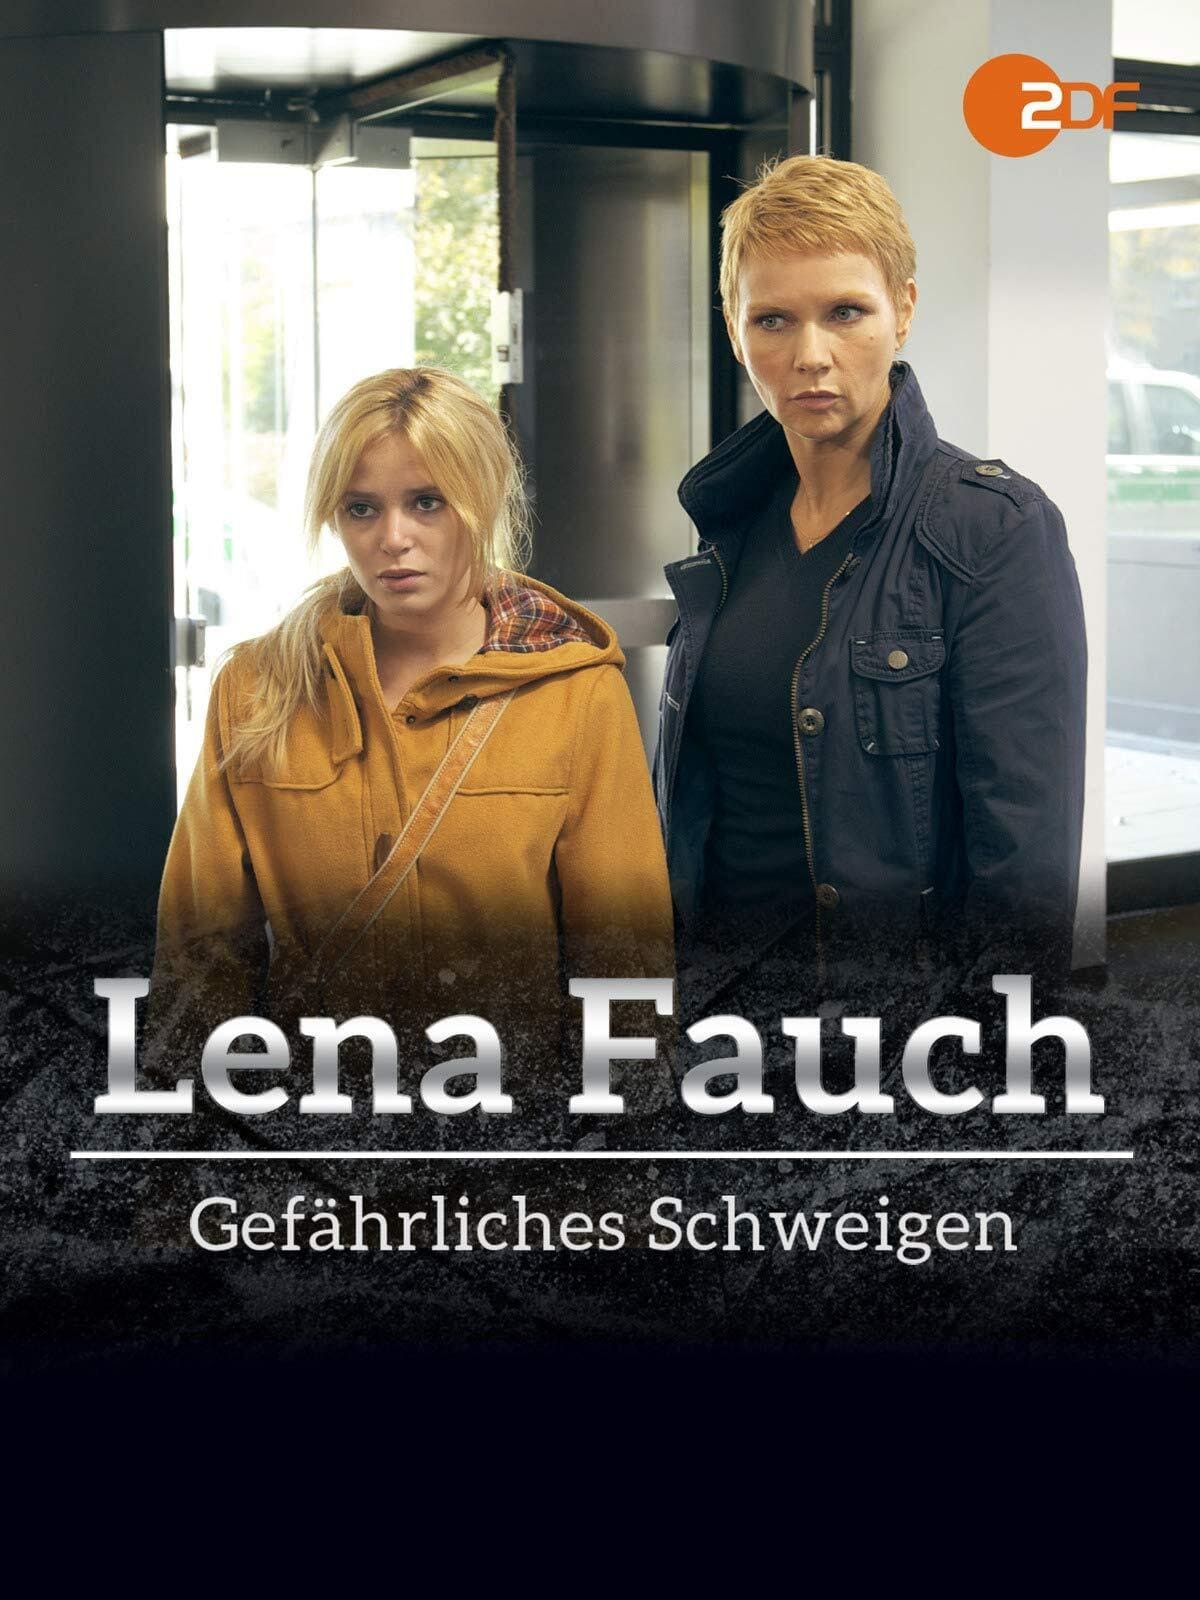 Lena Fauch - Gefährliches Schweigen (2013)